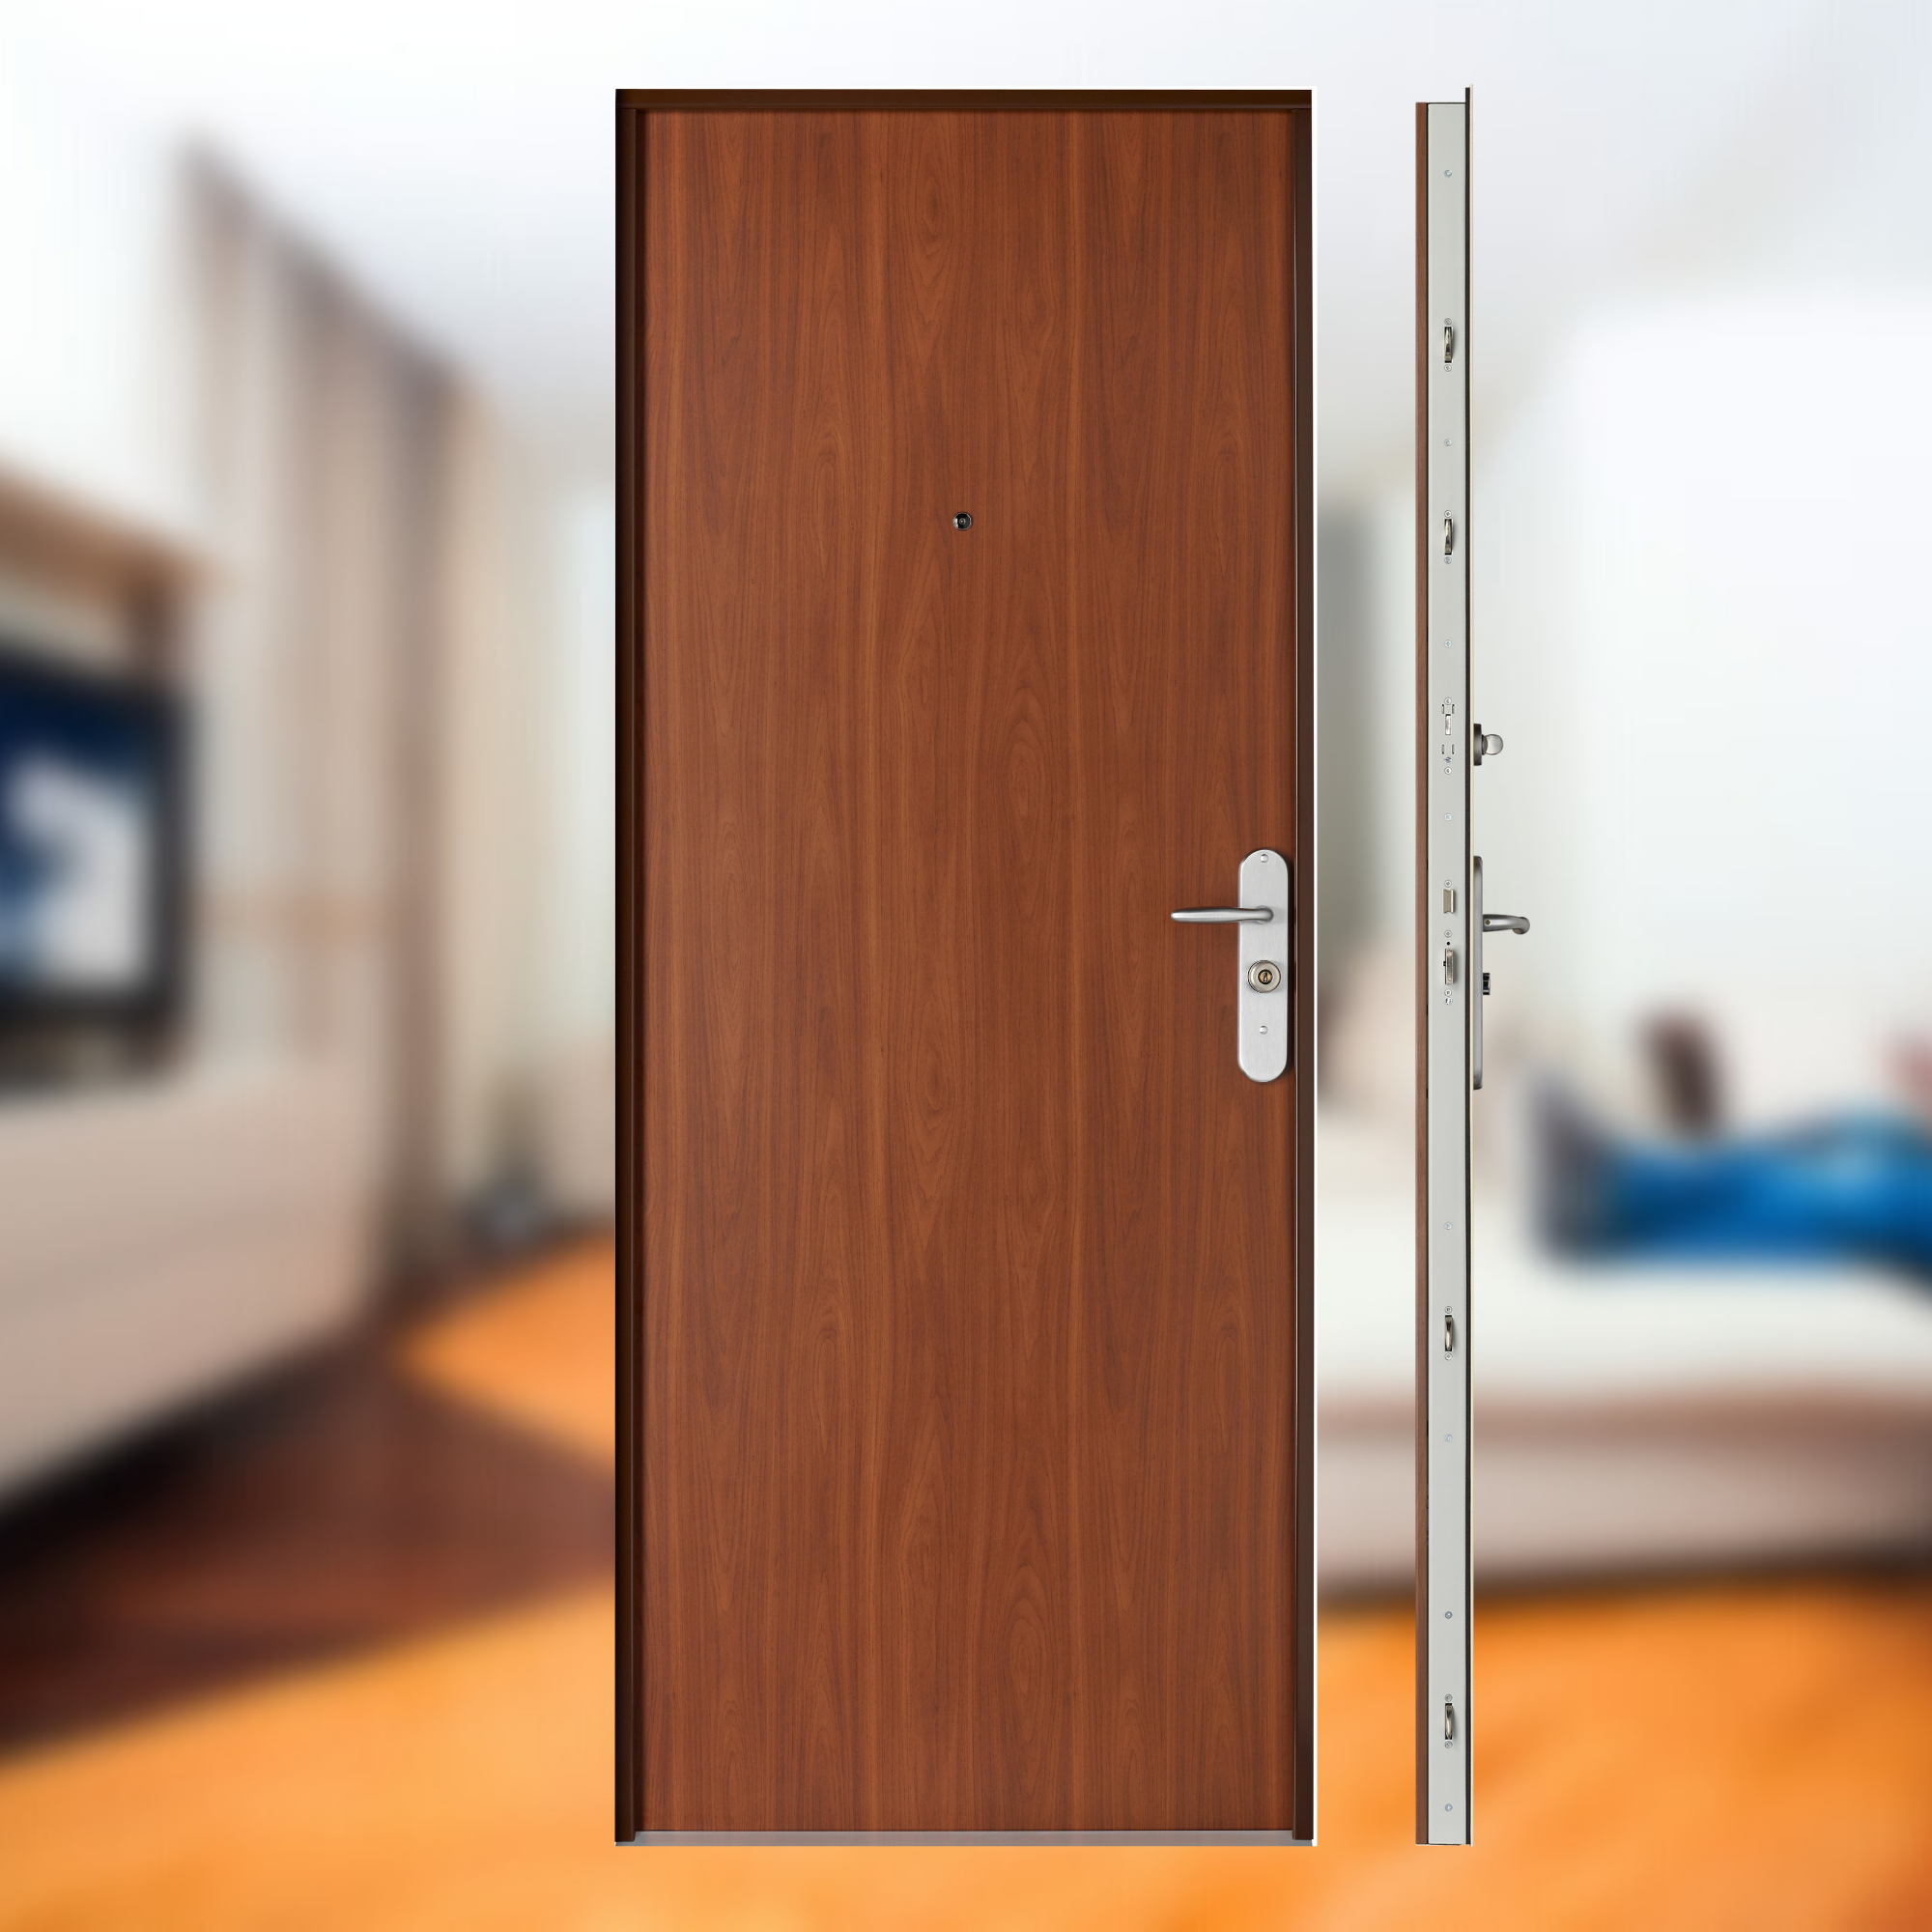 Comment sécuriser la porte d'entrée de son appartement ?